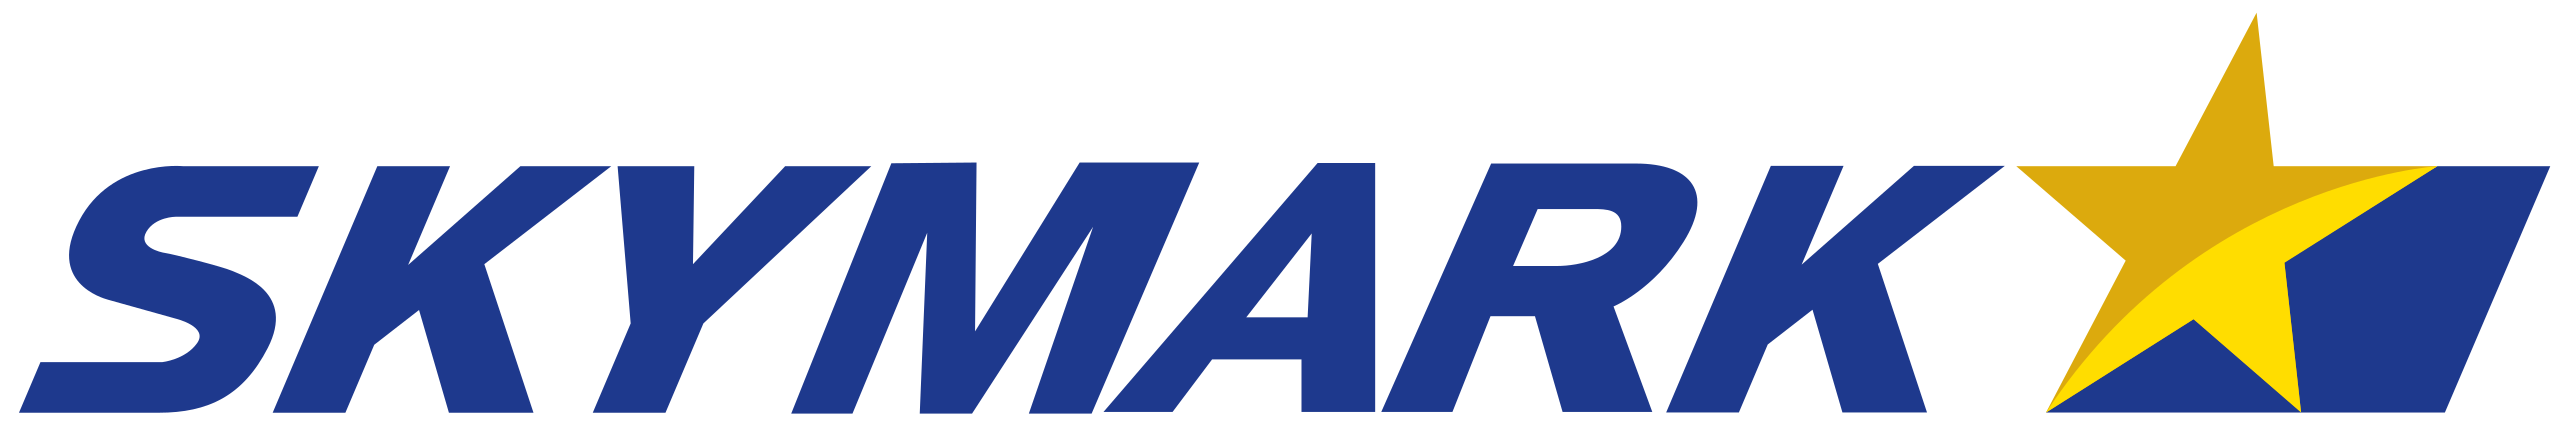 SKY logo